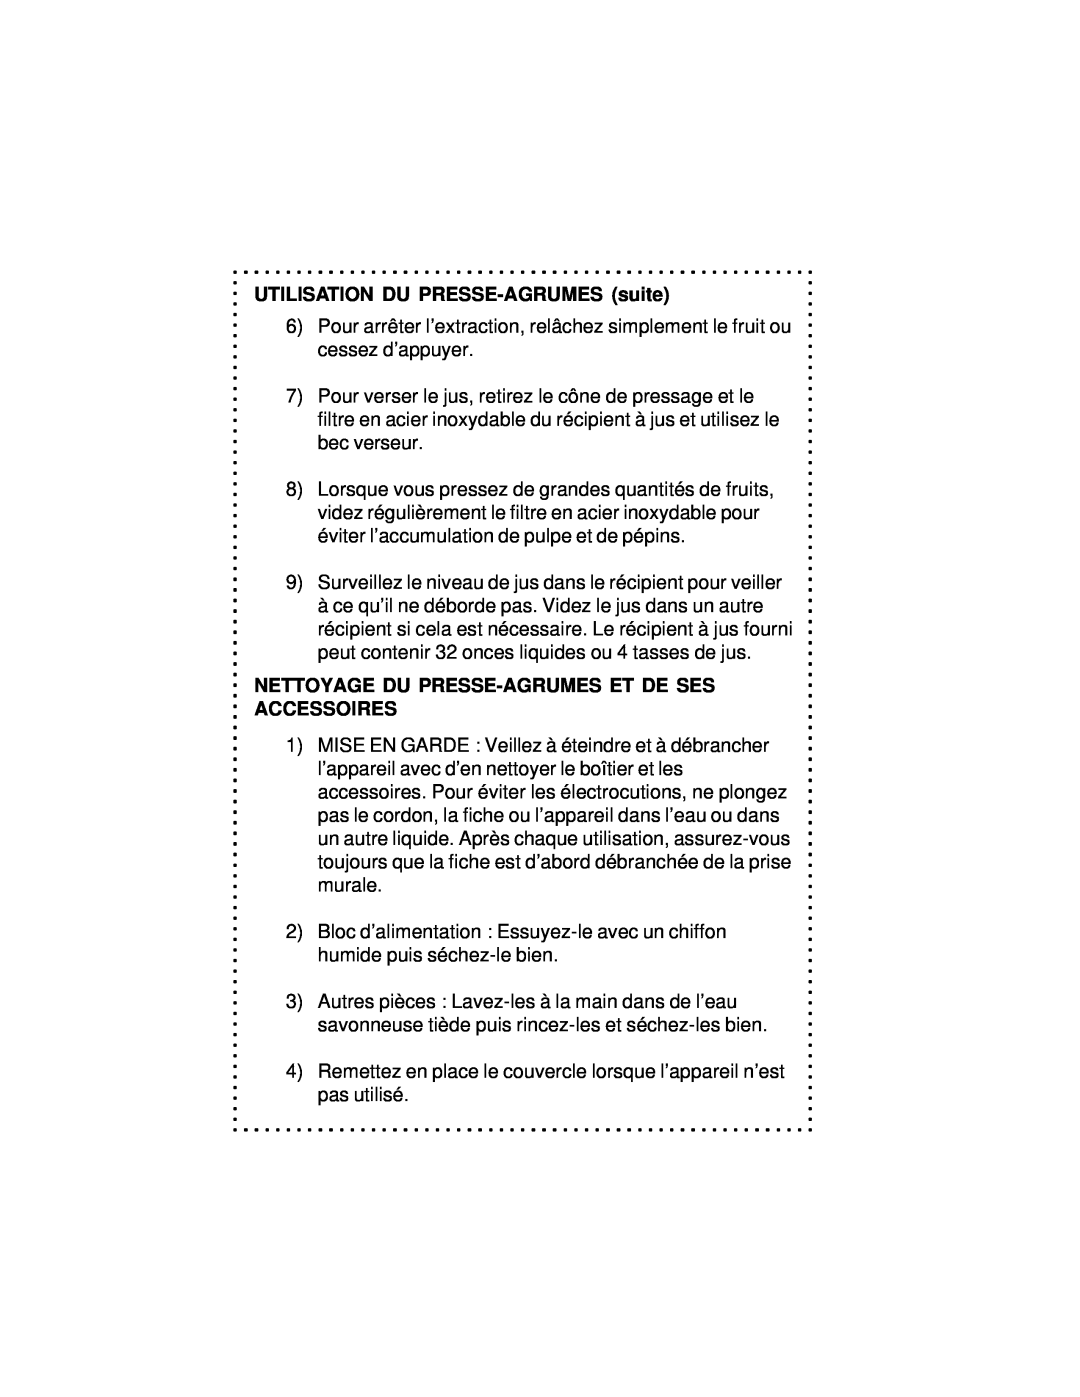 DeLonghi DJE270 instruction manual UTILISATION DU PRESSE-AGRUMESsuite, Nettoyage Du Presse-Agrumeset De Ses Accessoires 